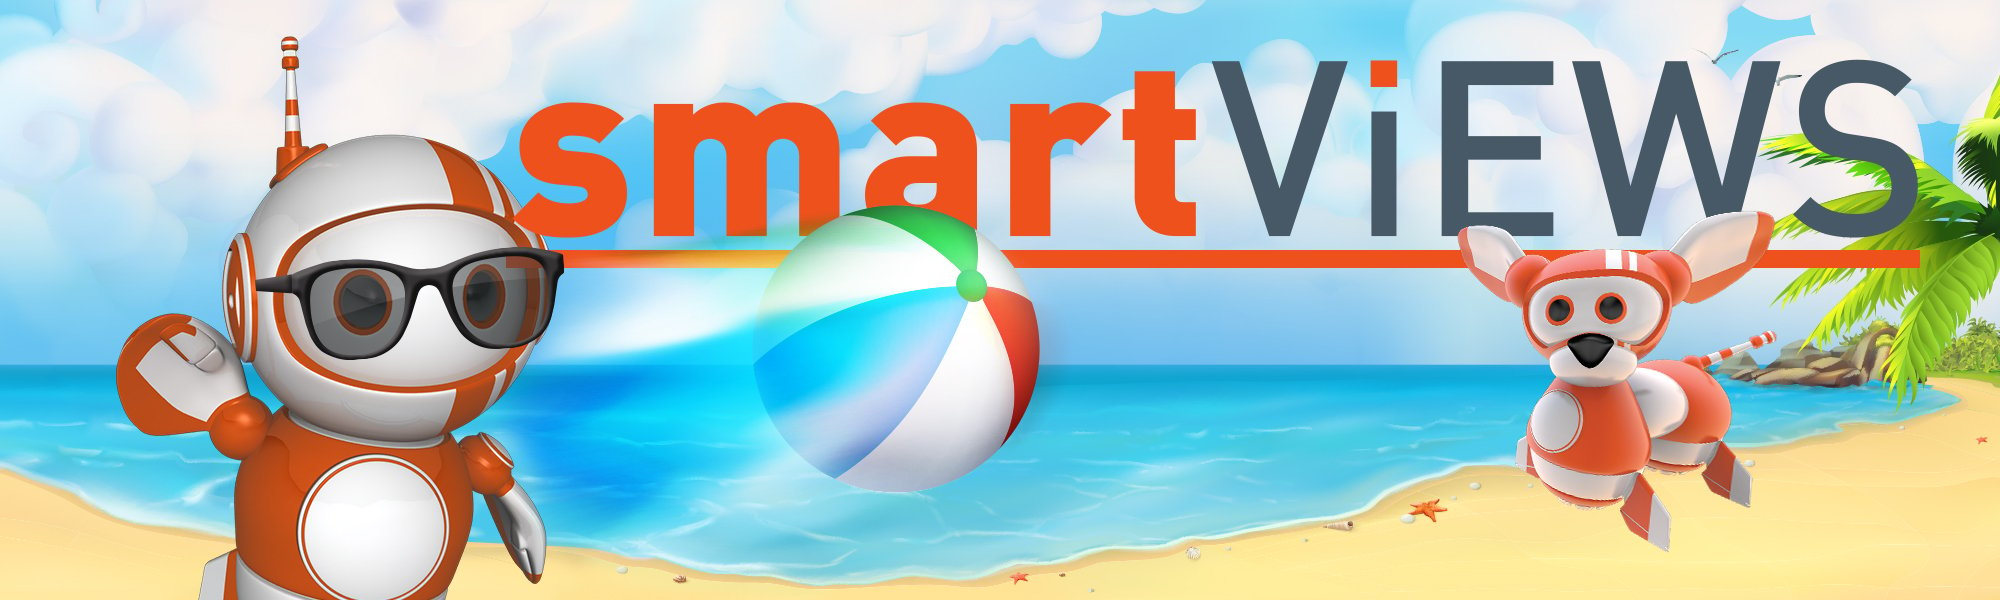 SmartViews-Summer-1000x300-FINAL